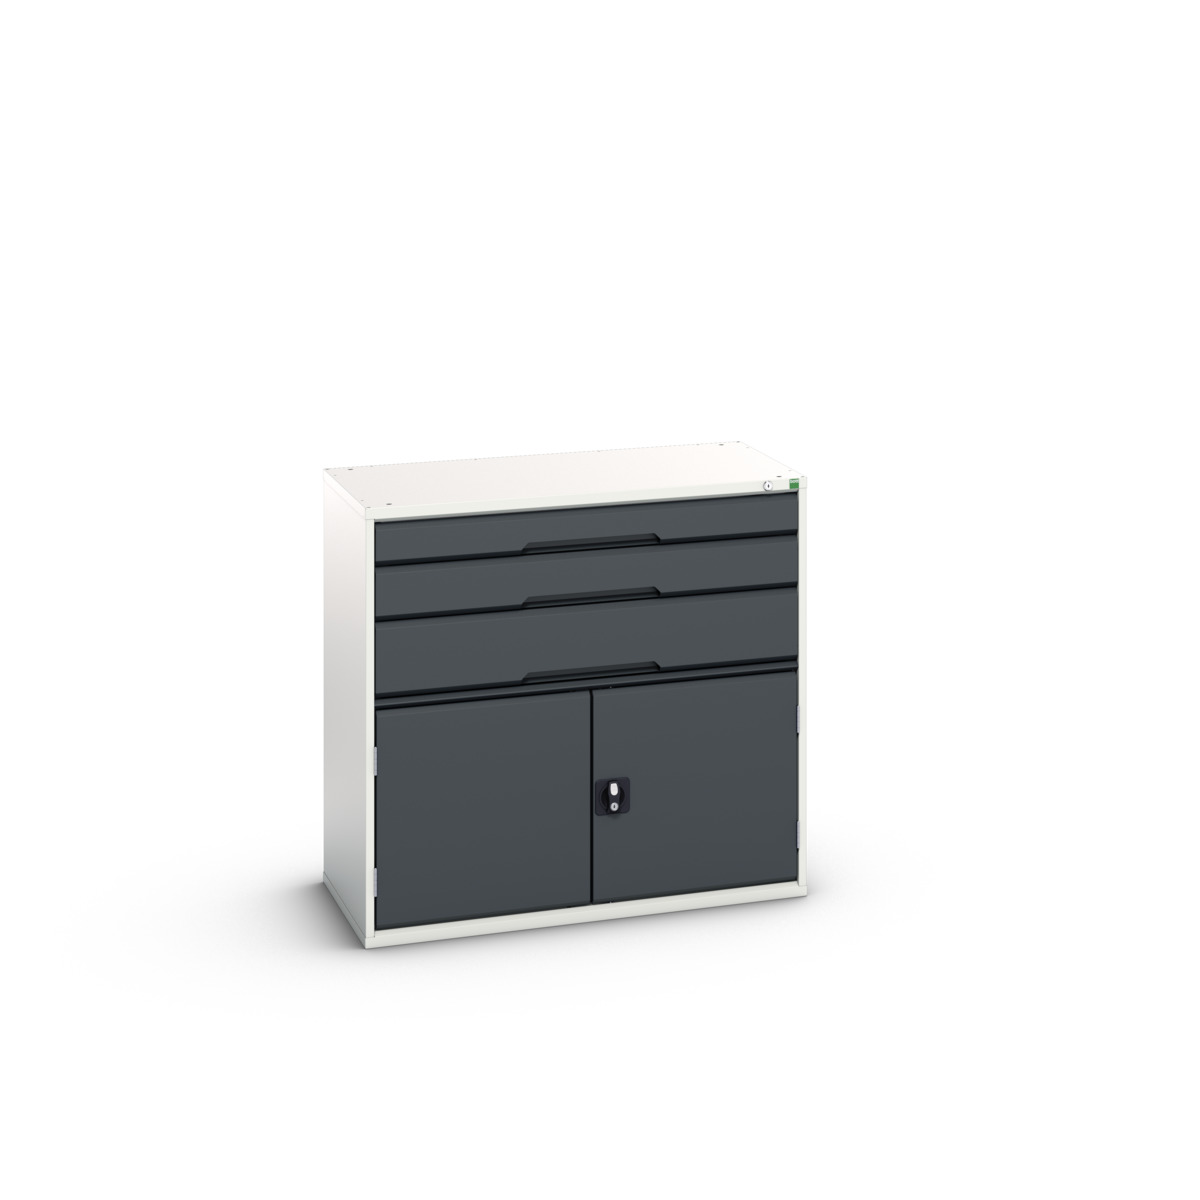 16925561.19 - verso drawer-door cabinet